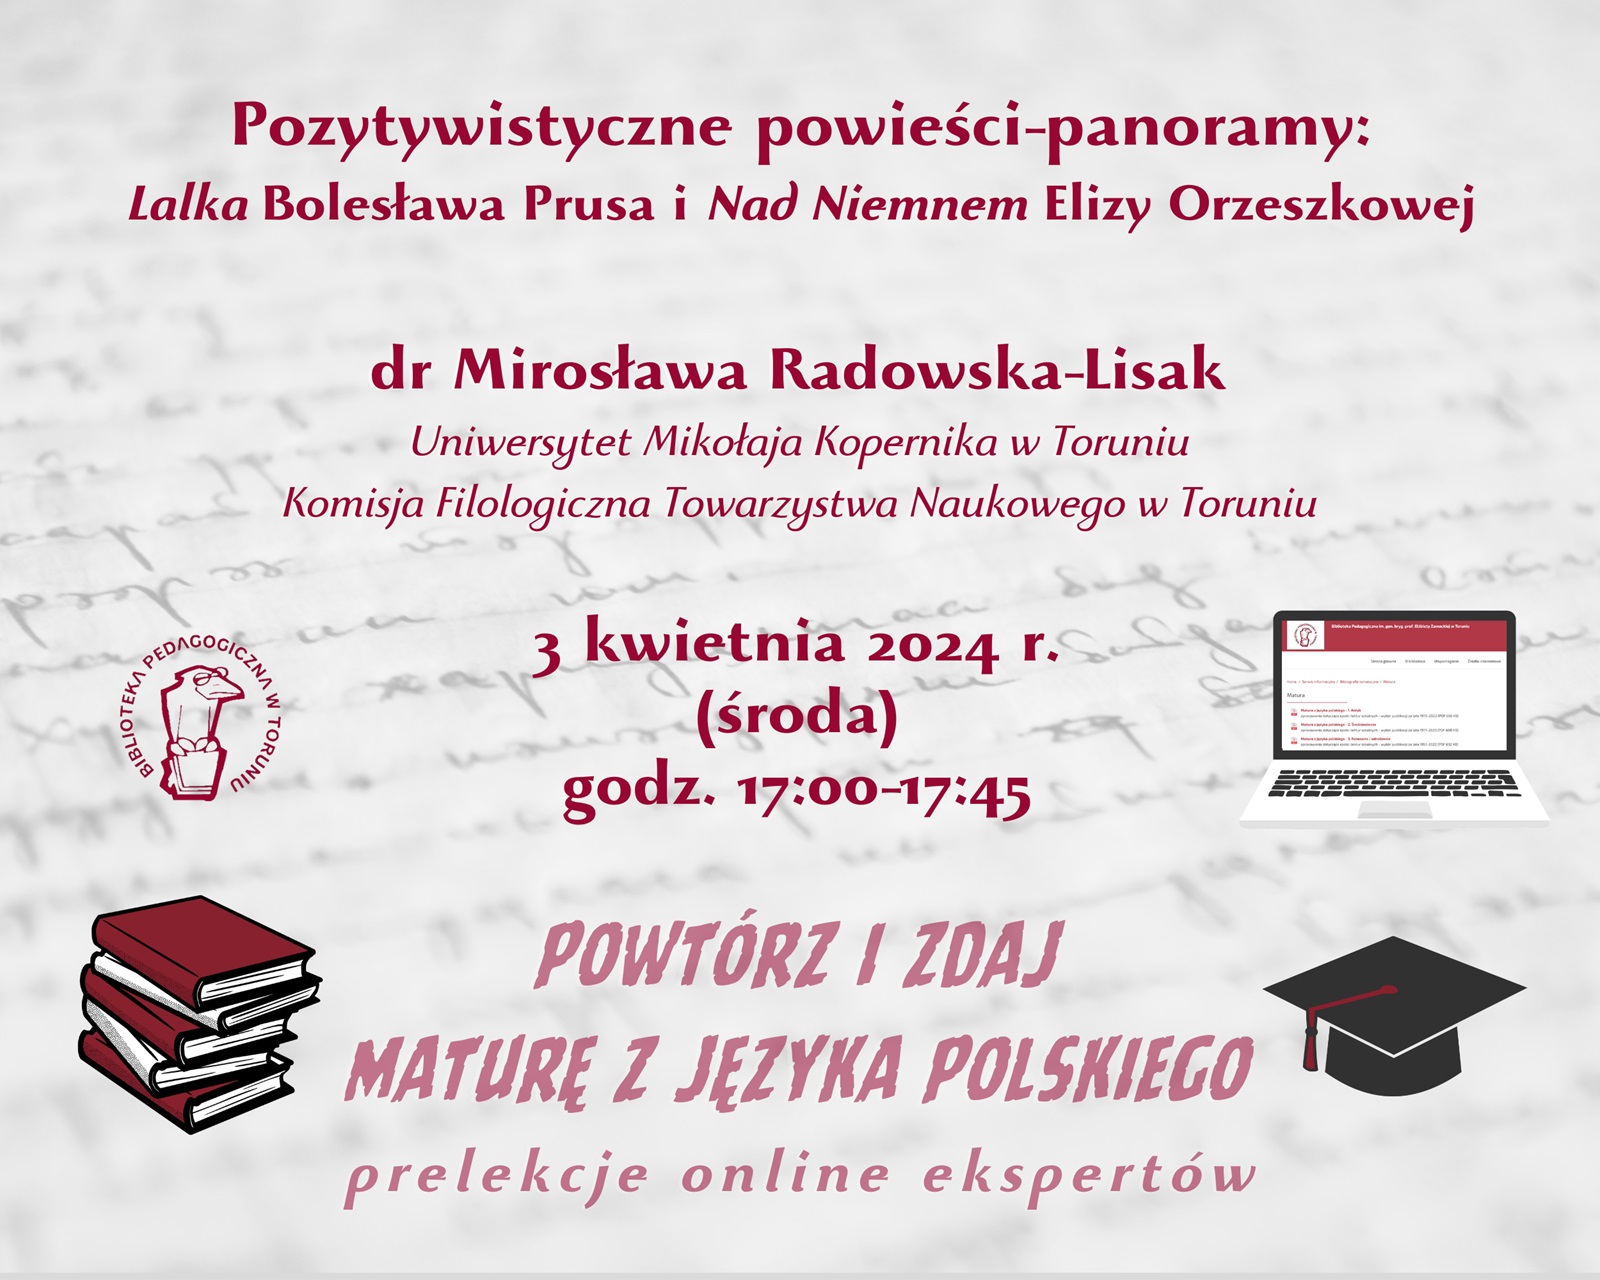 Grafika zapraszająca do udziału w wykładzie online. W lewym górnym rogu logo Biblioteki Pedagogicznej w Toruniu: ptak w okularach, siedzący na książce, w prawym górnym rogu laptop, w lewym dolnym stos książek a w prawym dolnym czarna czapka absolwencka.